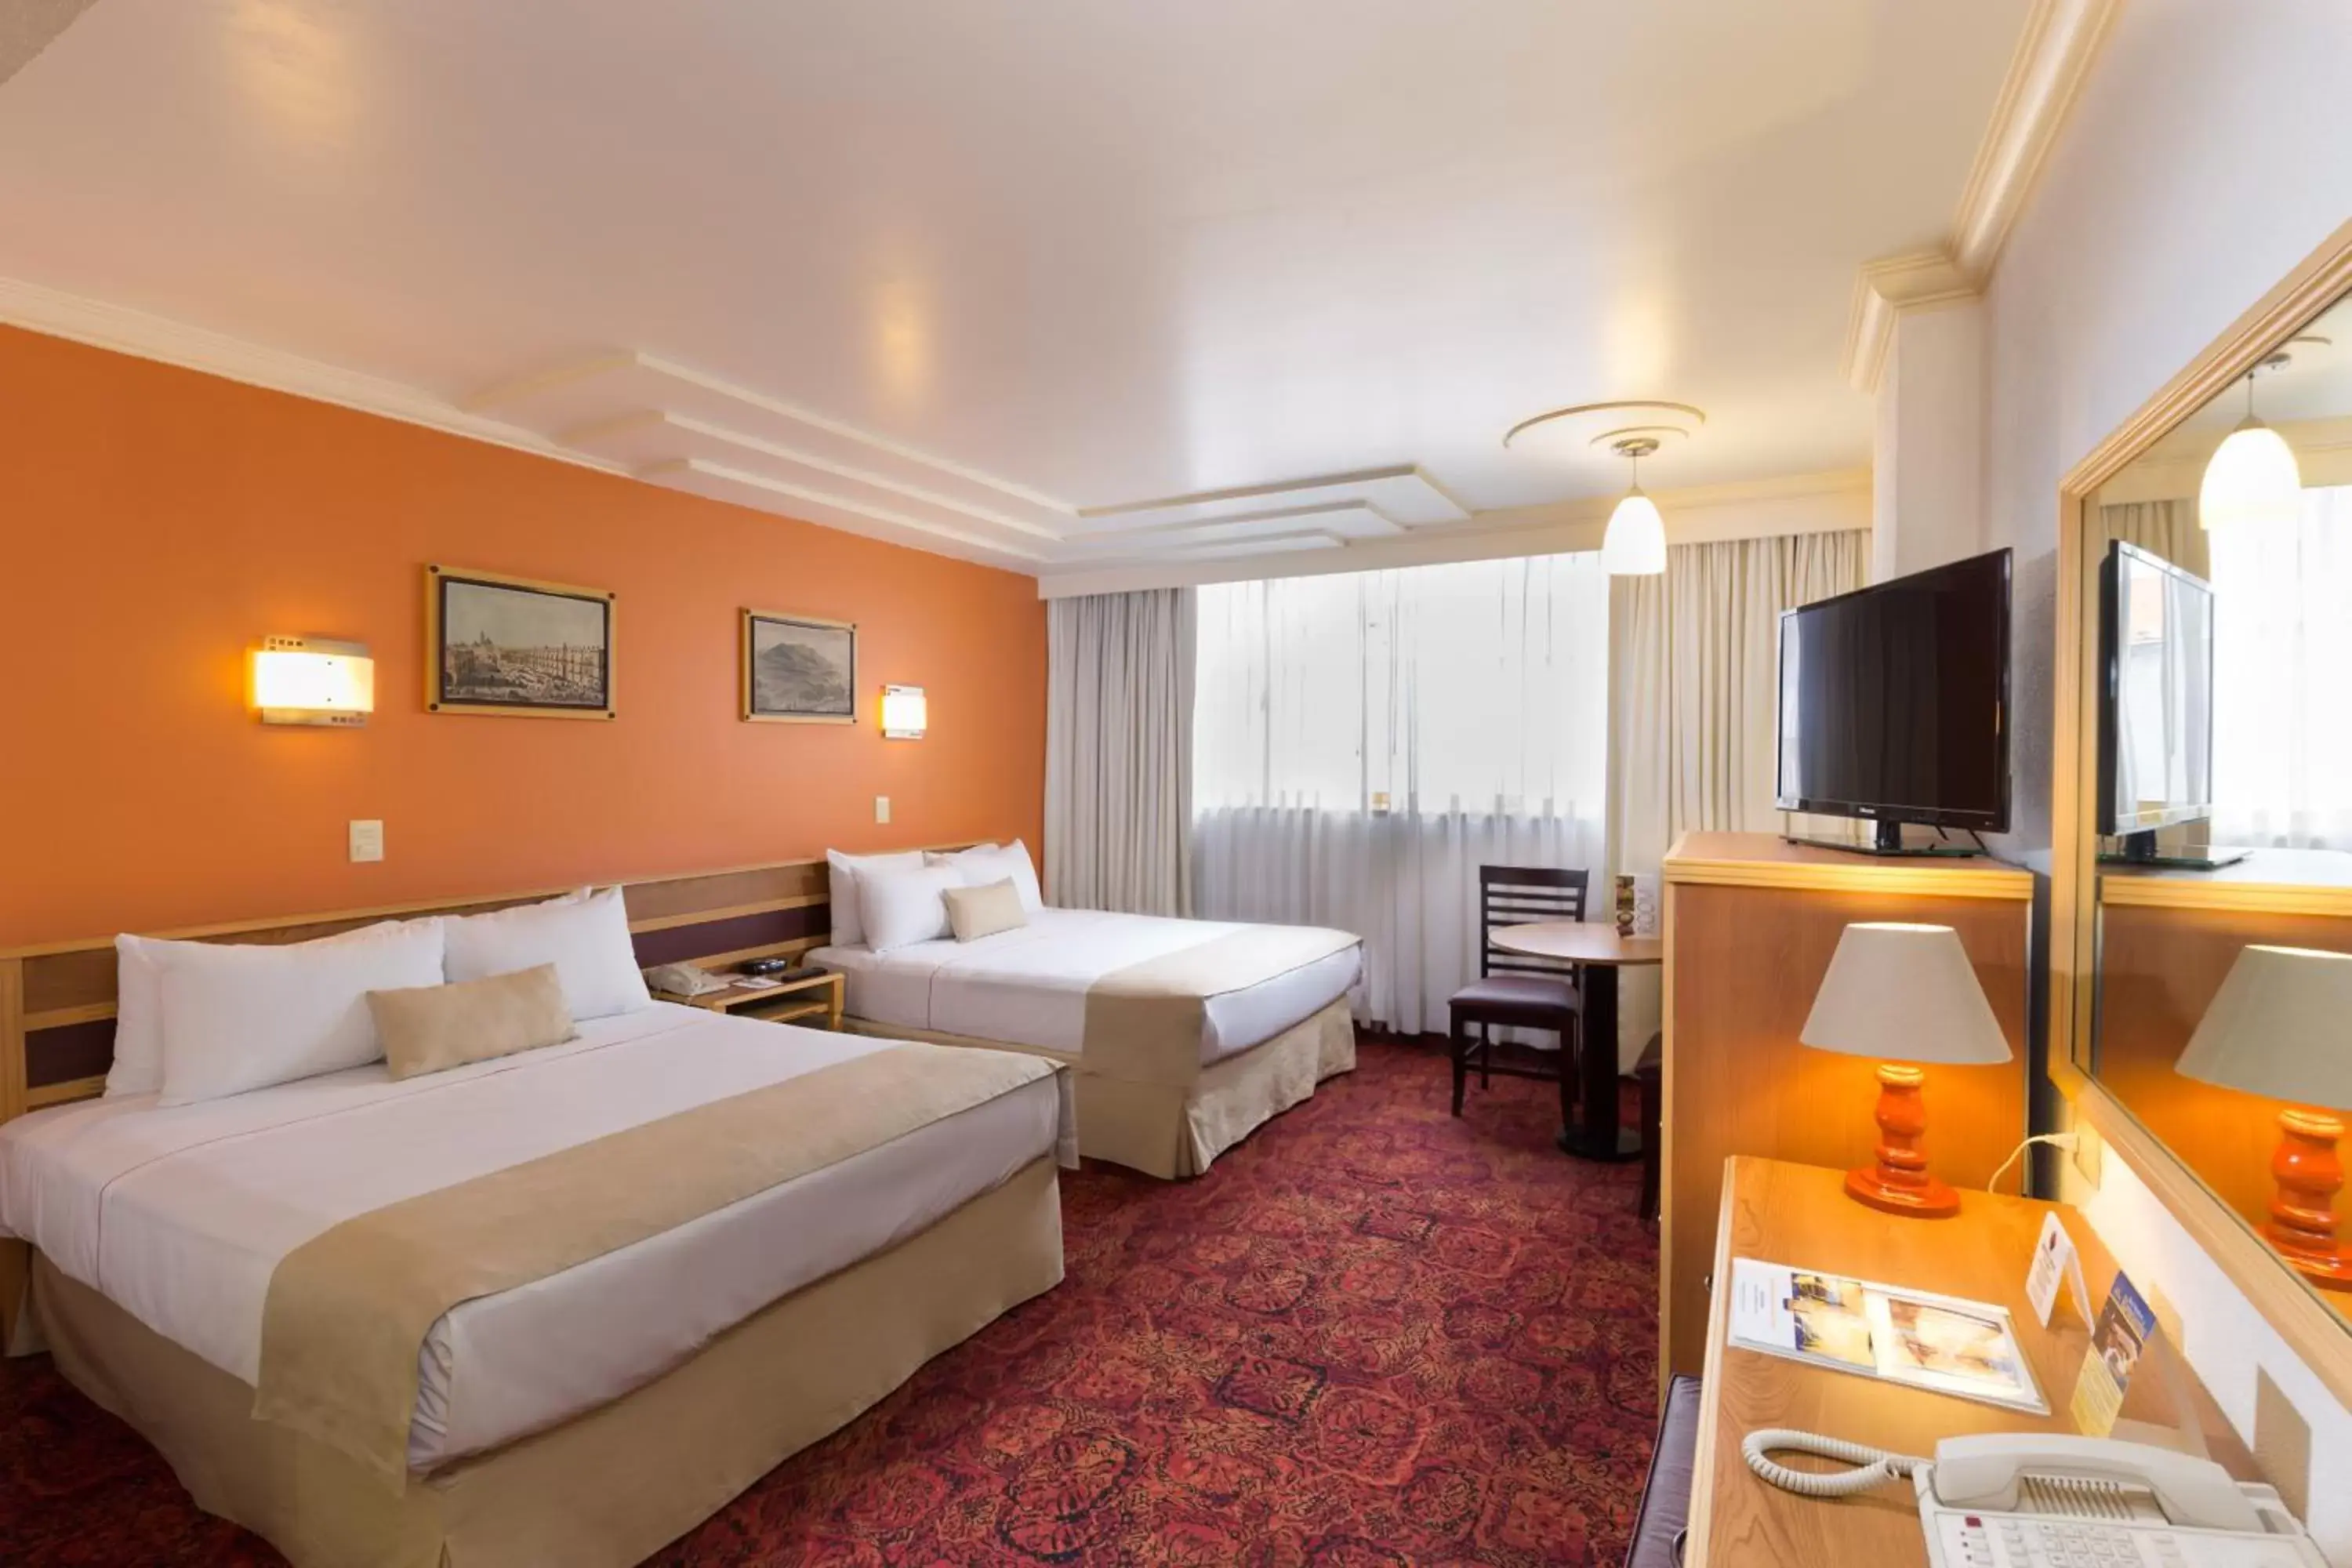 Shower, Room Photo in Hotel Estoril